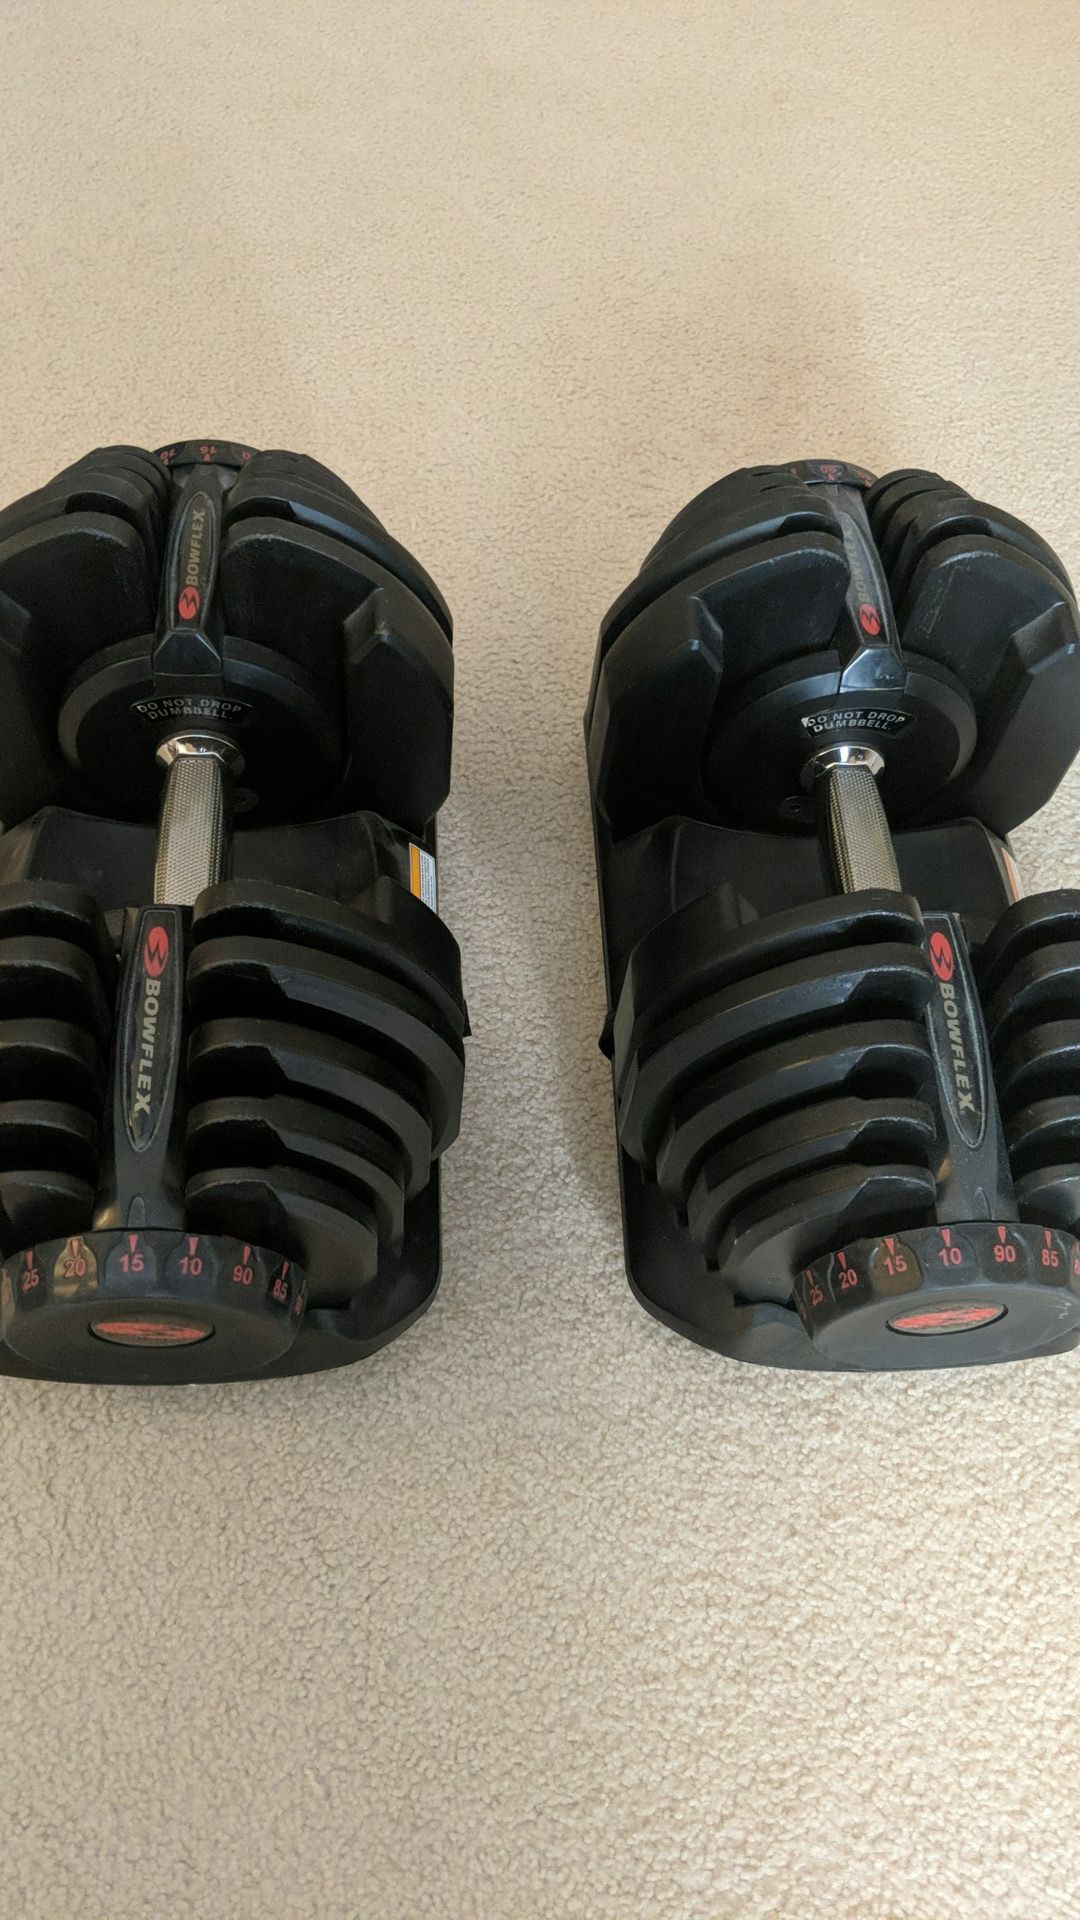 Set of 2 Bowflex Dumbbells, Select tech 1090, 90 pounds each